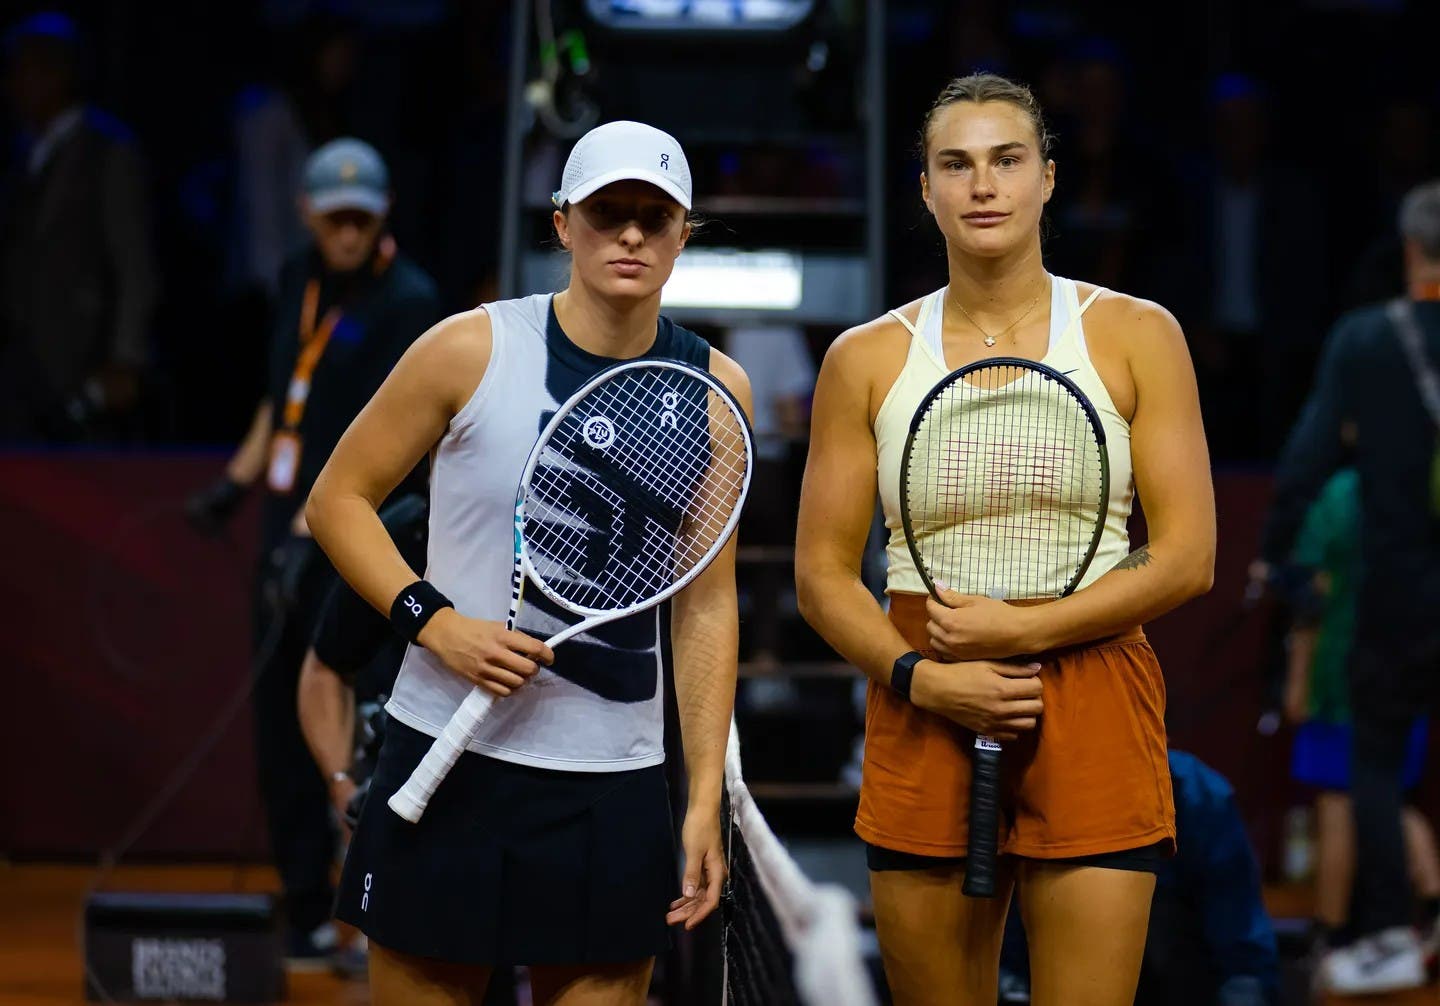 Prémios iguais para homens e mulheres. Swiatek também quer igualdade nos torneios  WTA e ATP - Ténis - SAPO Desporto